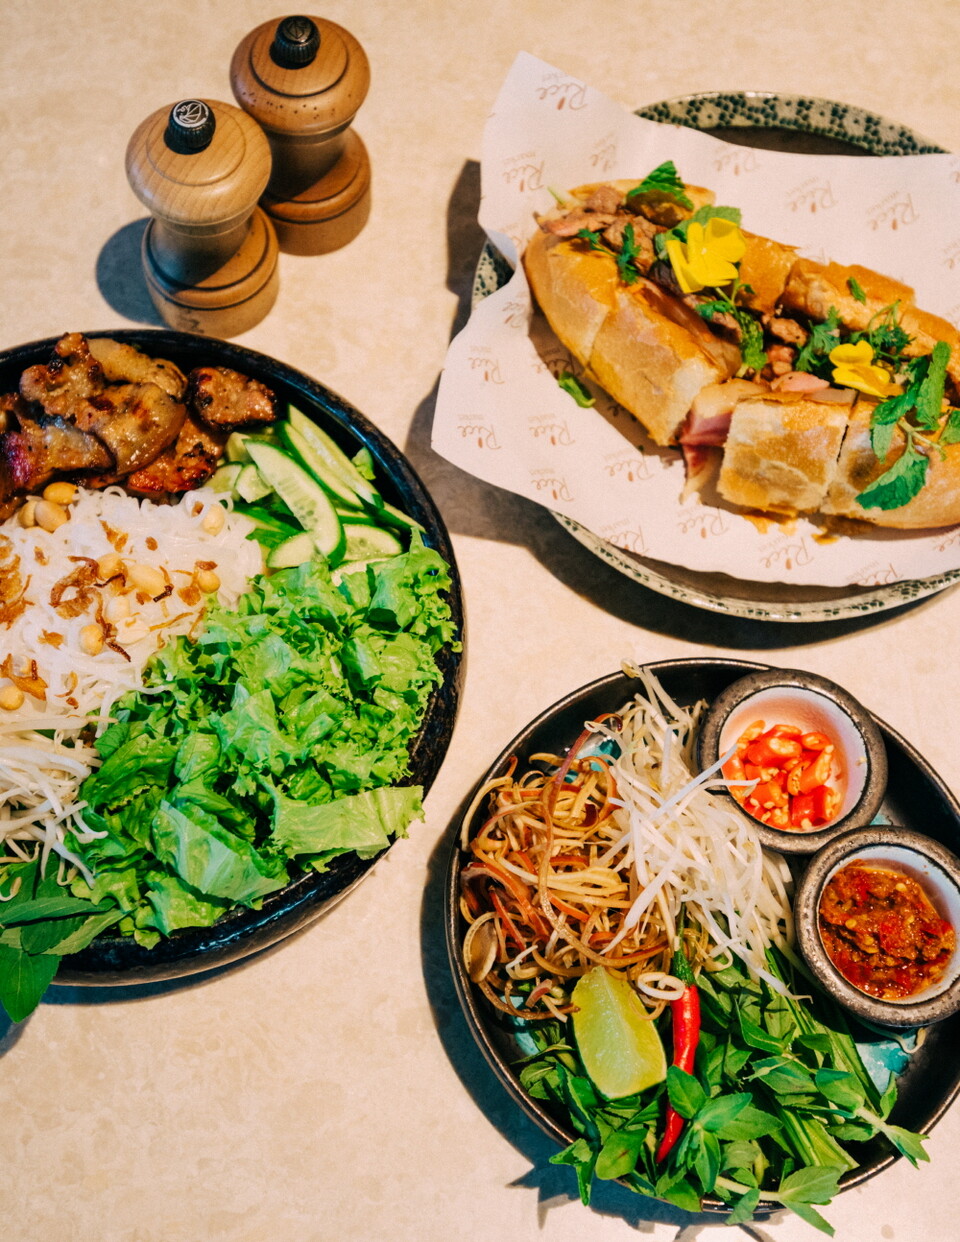 베트남 및 중식 퓨전 요리를 선보이는 ‘라이스 마켓’, 조식당으로도 운영된다